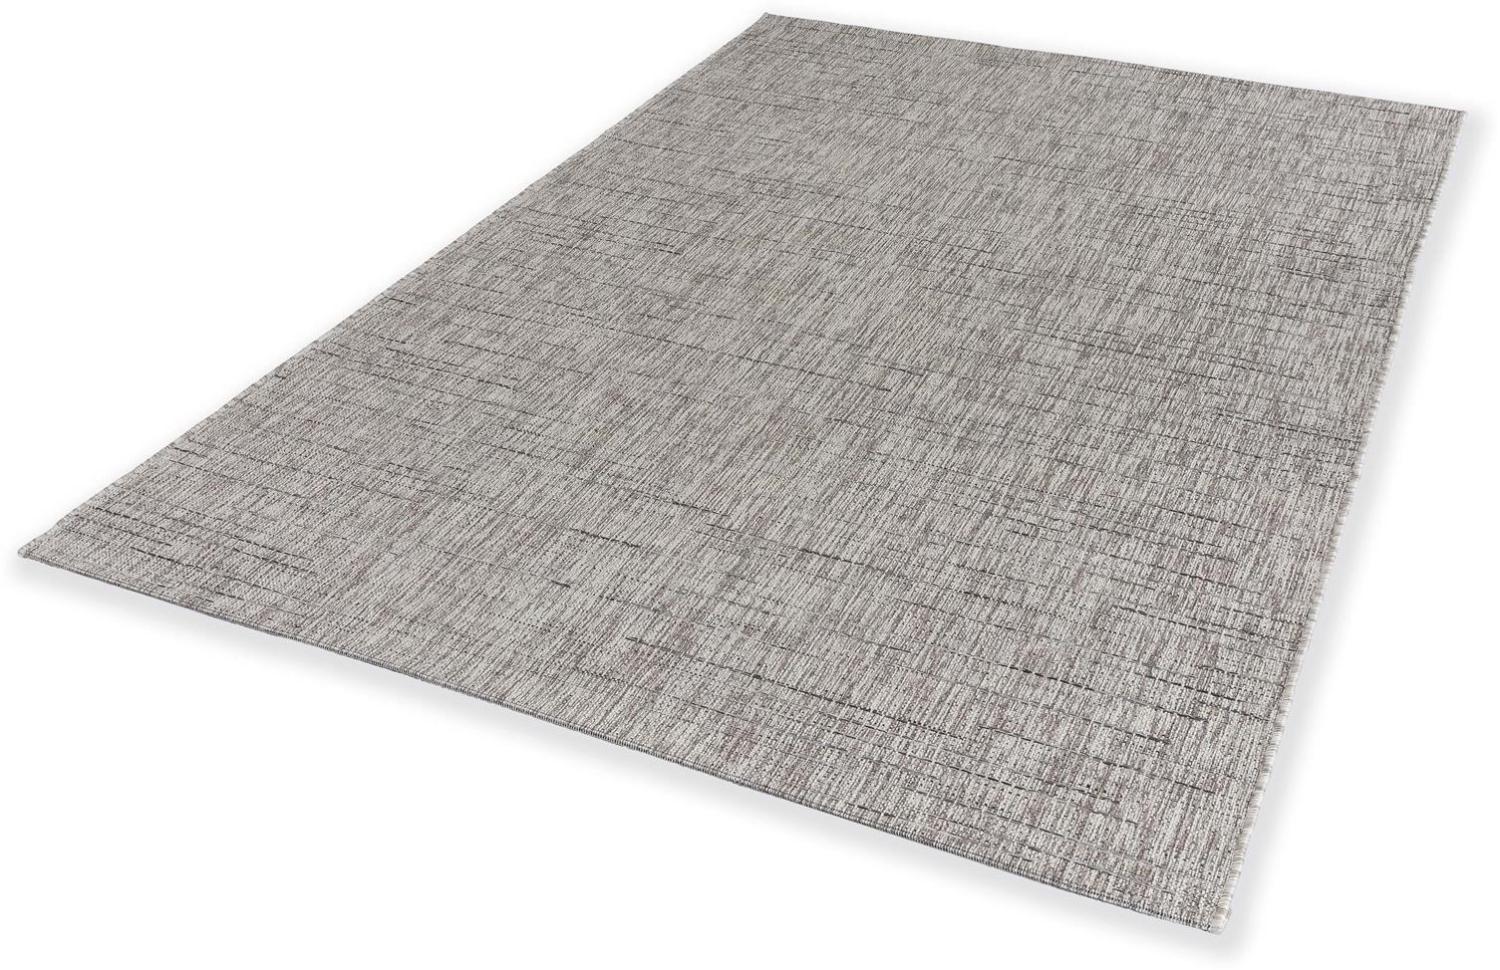 Teppich in Anthrazit aus 100% Polypropylen - 290x200x0,5cm (LxBxH) Bild 1